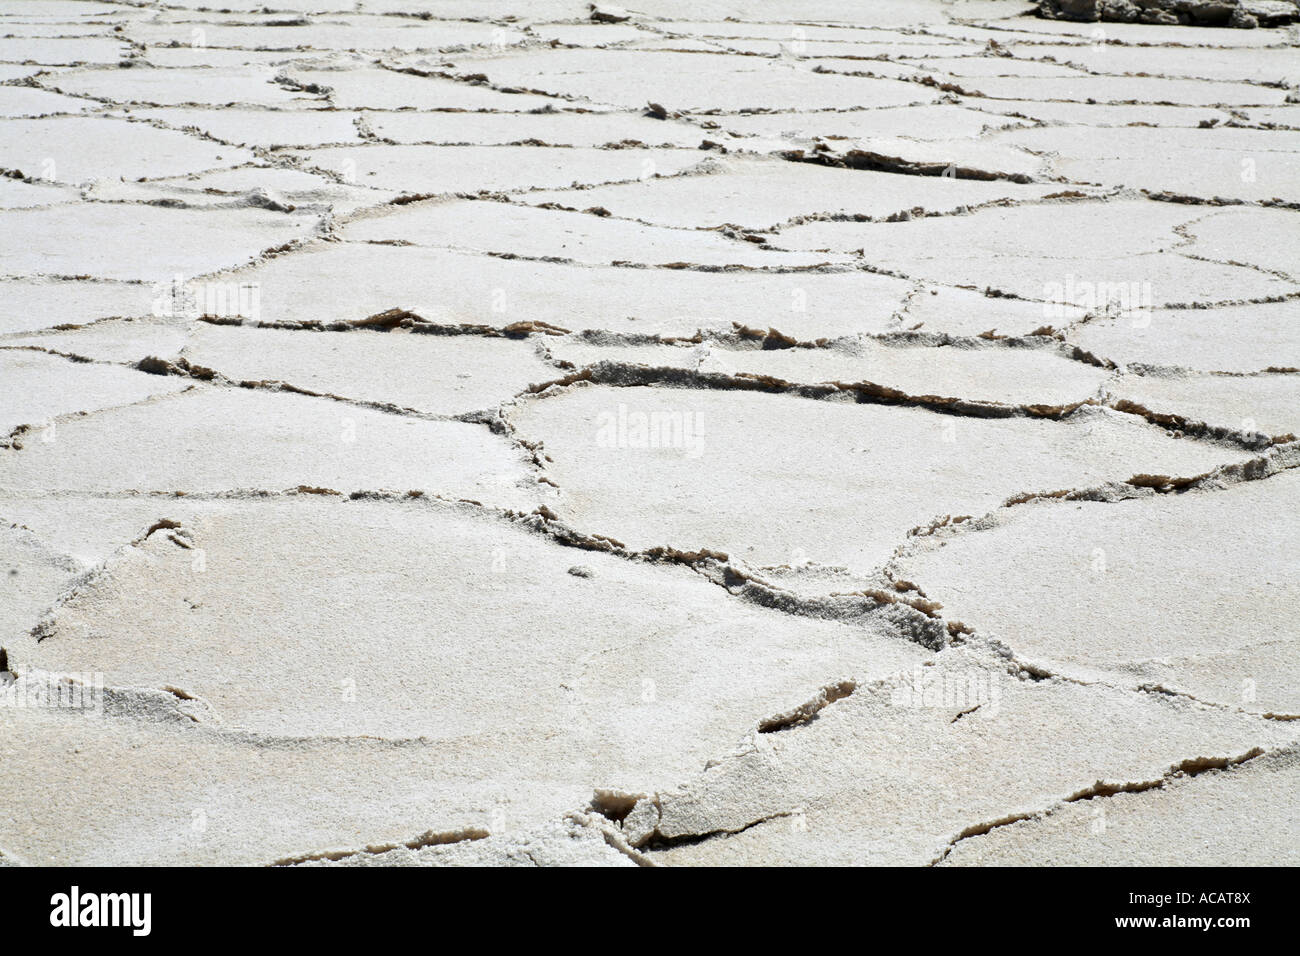 Polygones de sel dans le désert de Mojave, Californie, USA Banque D'Images